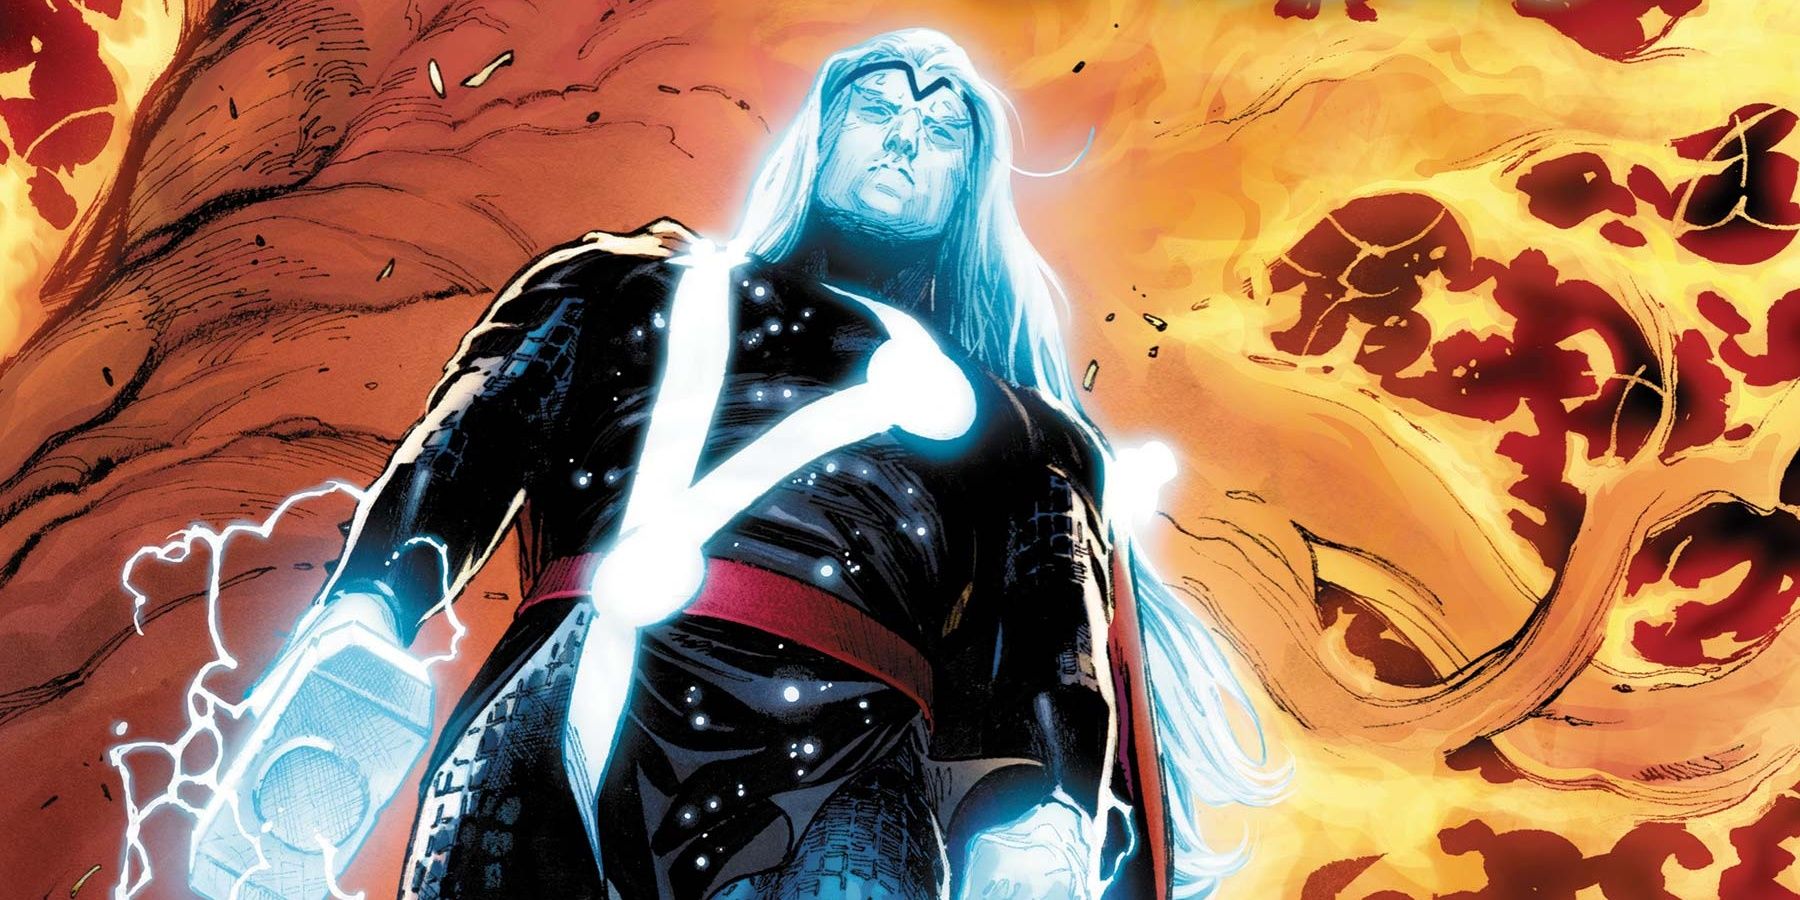 Thor as a Herald Of Galactus